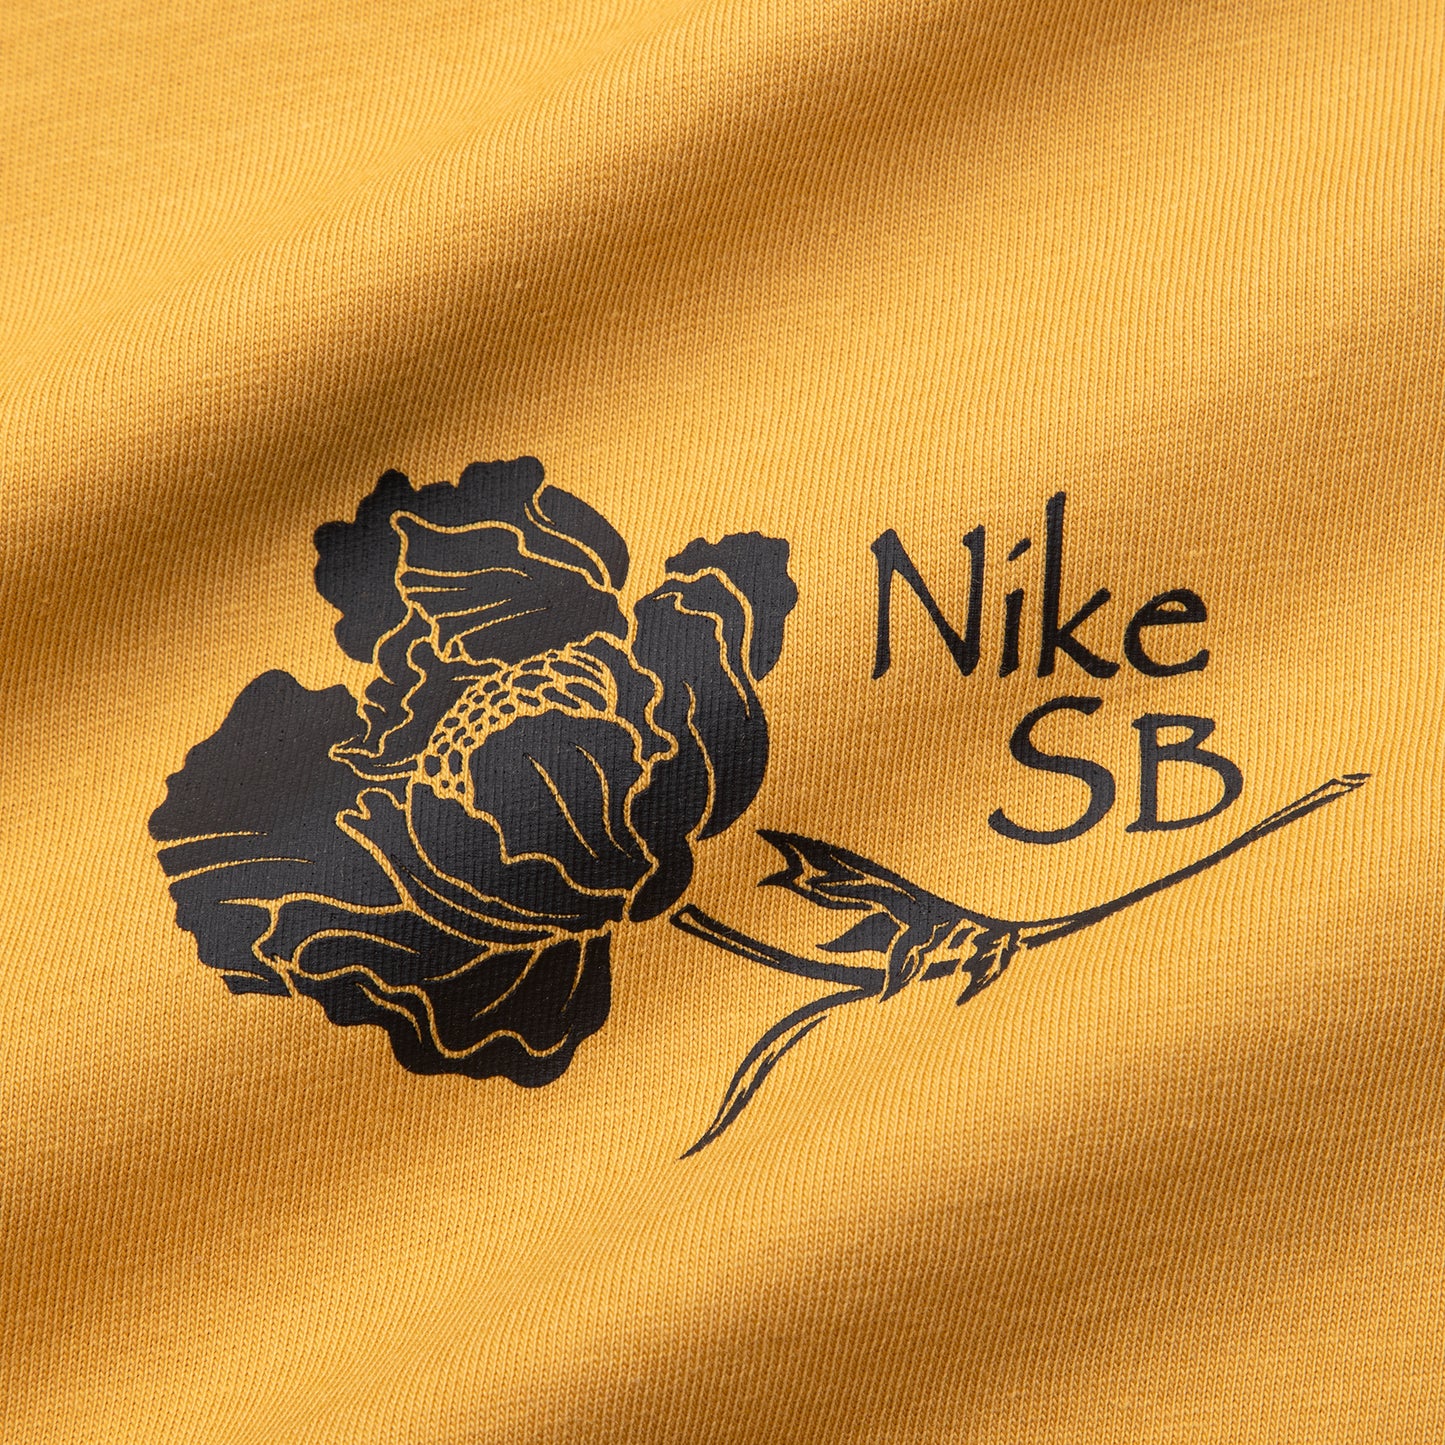 Nike SB Skate T-Shirt (Sanded Gold)